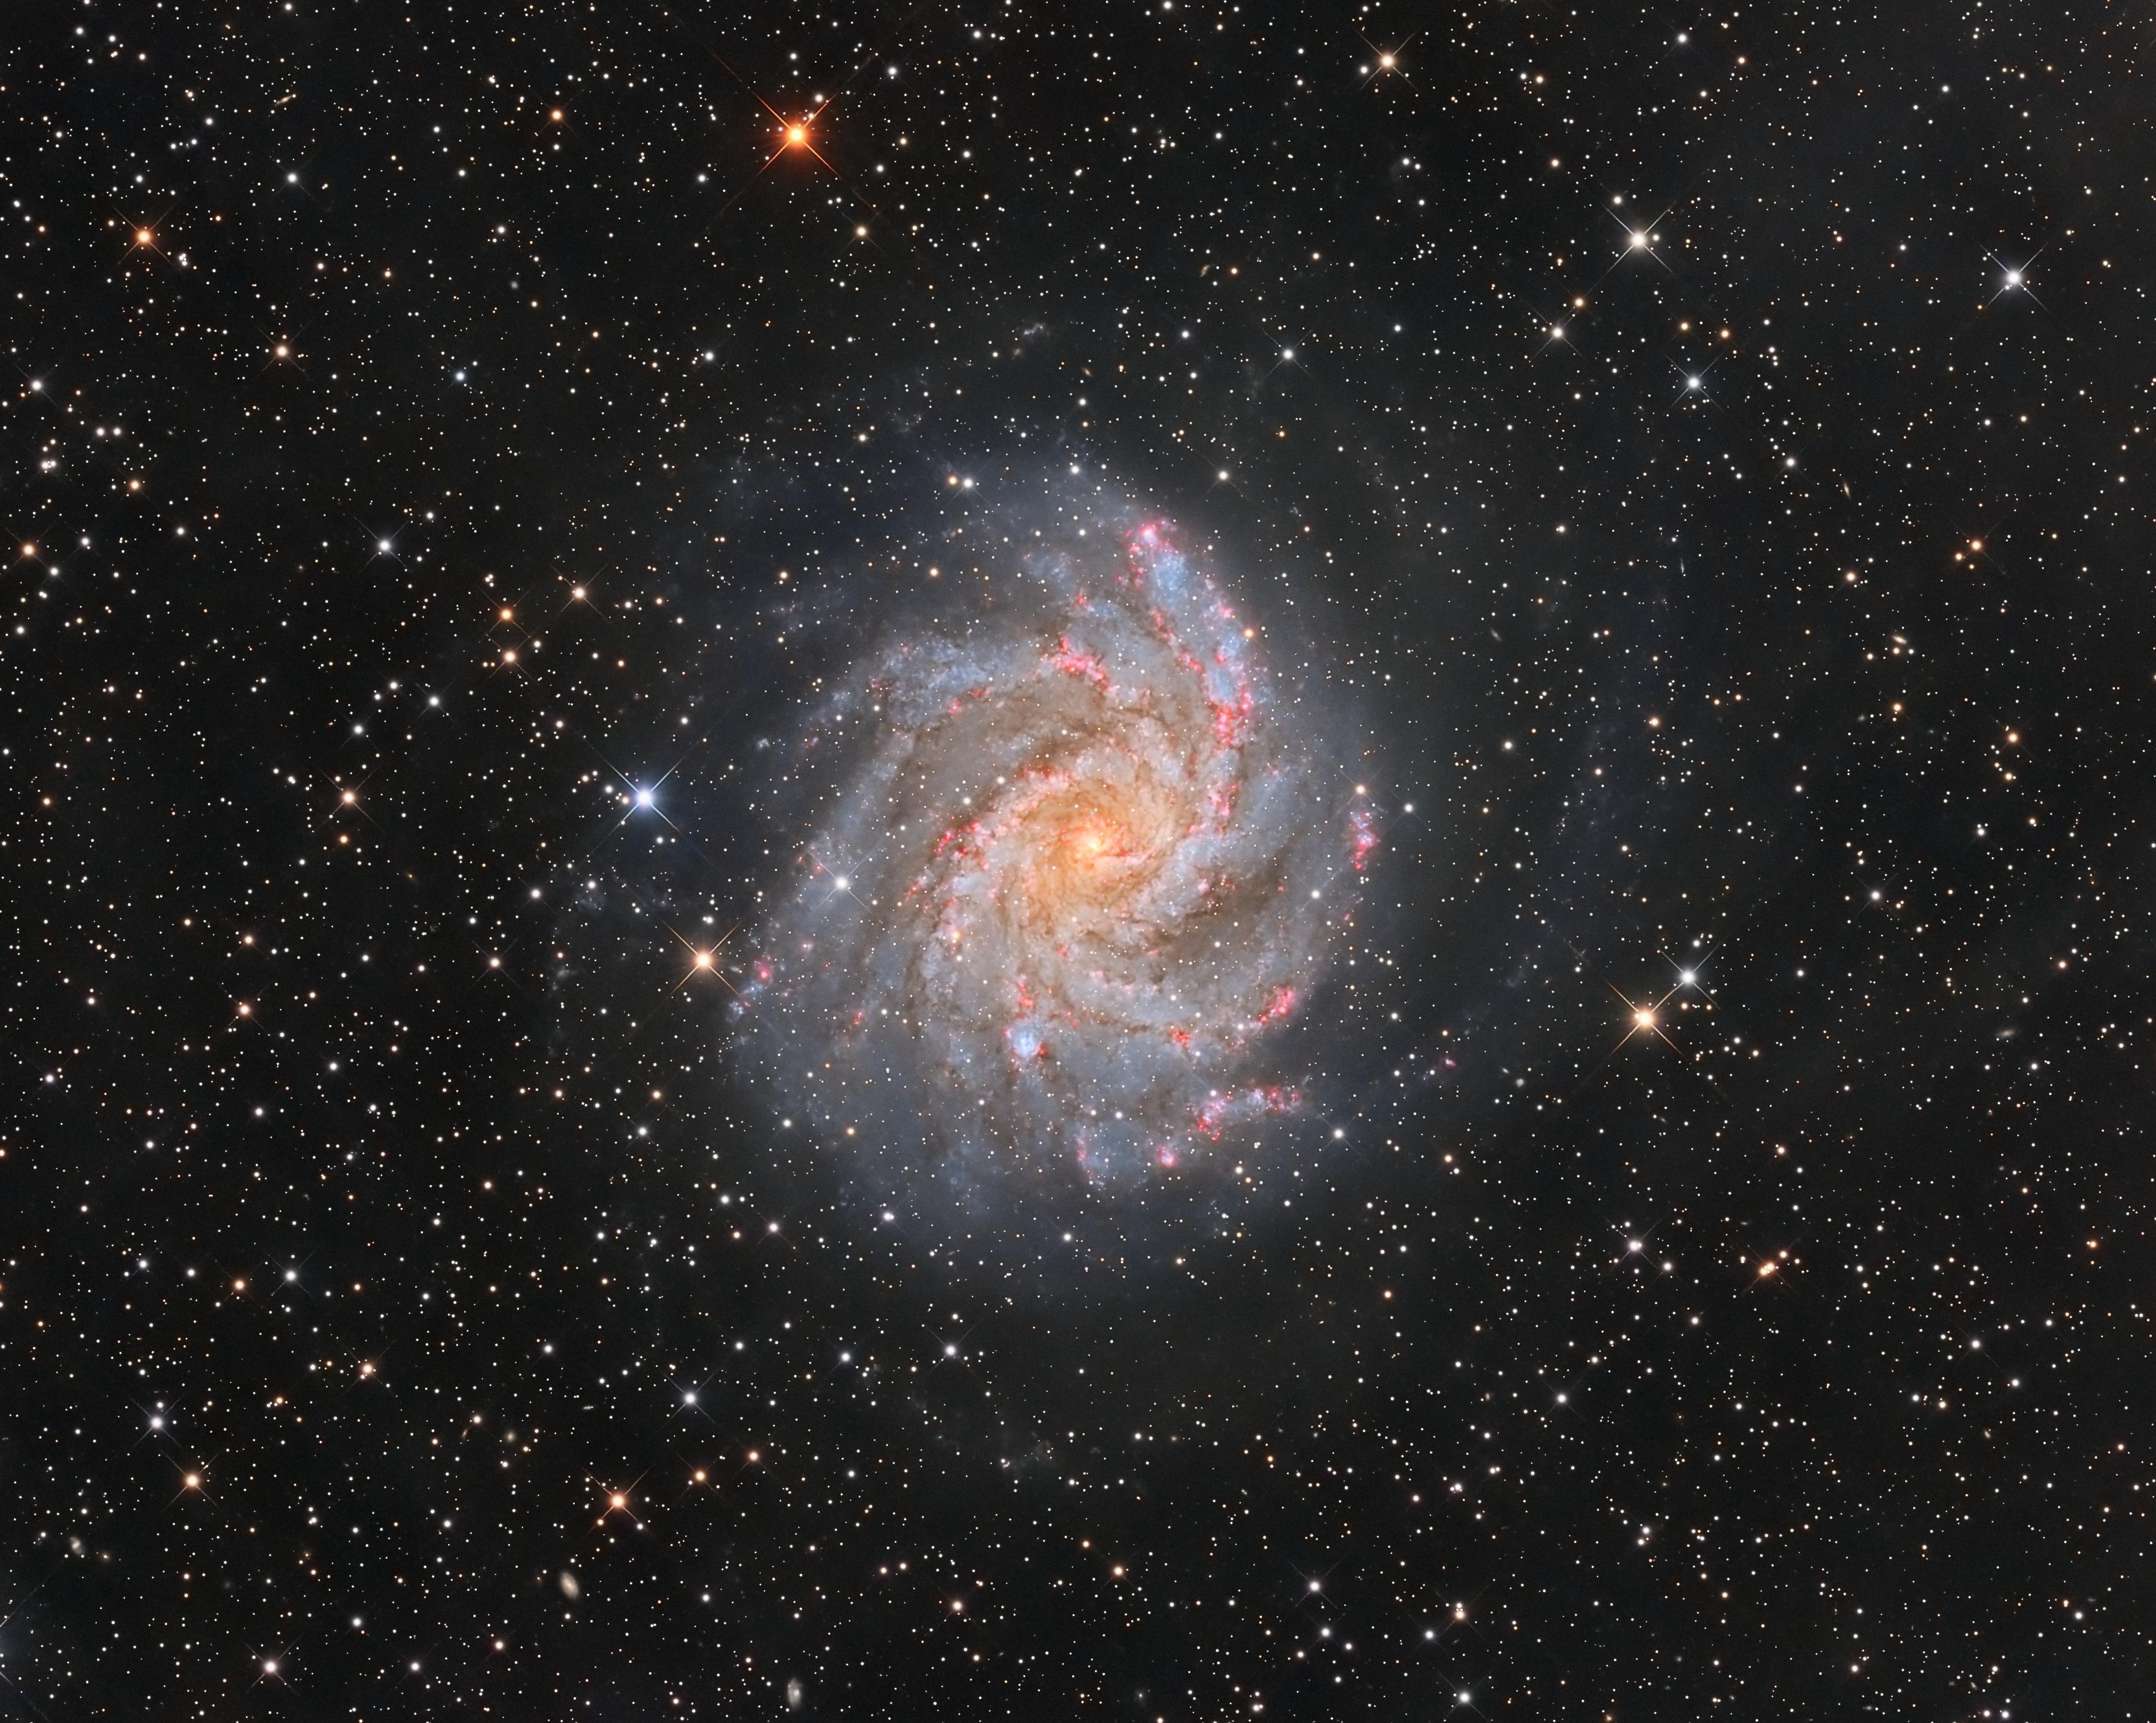 مجرّة حلزونيّة تُرى من وجهها بنواتها المصفرّة التي تمتدّ منها أذرع مزرقّة تشوبها مناطق محمرّة في حين تتناثر نجوم المقدّمة عبر الصورة